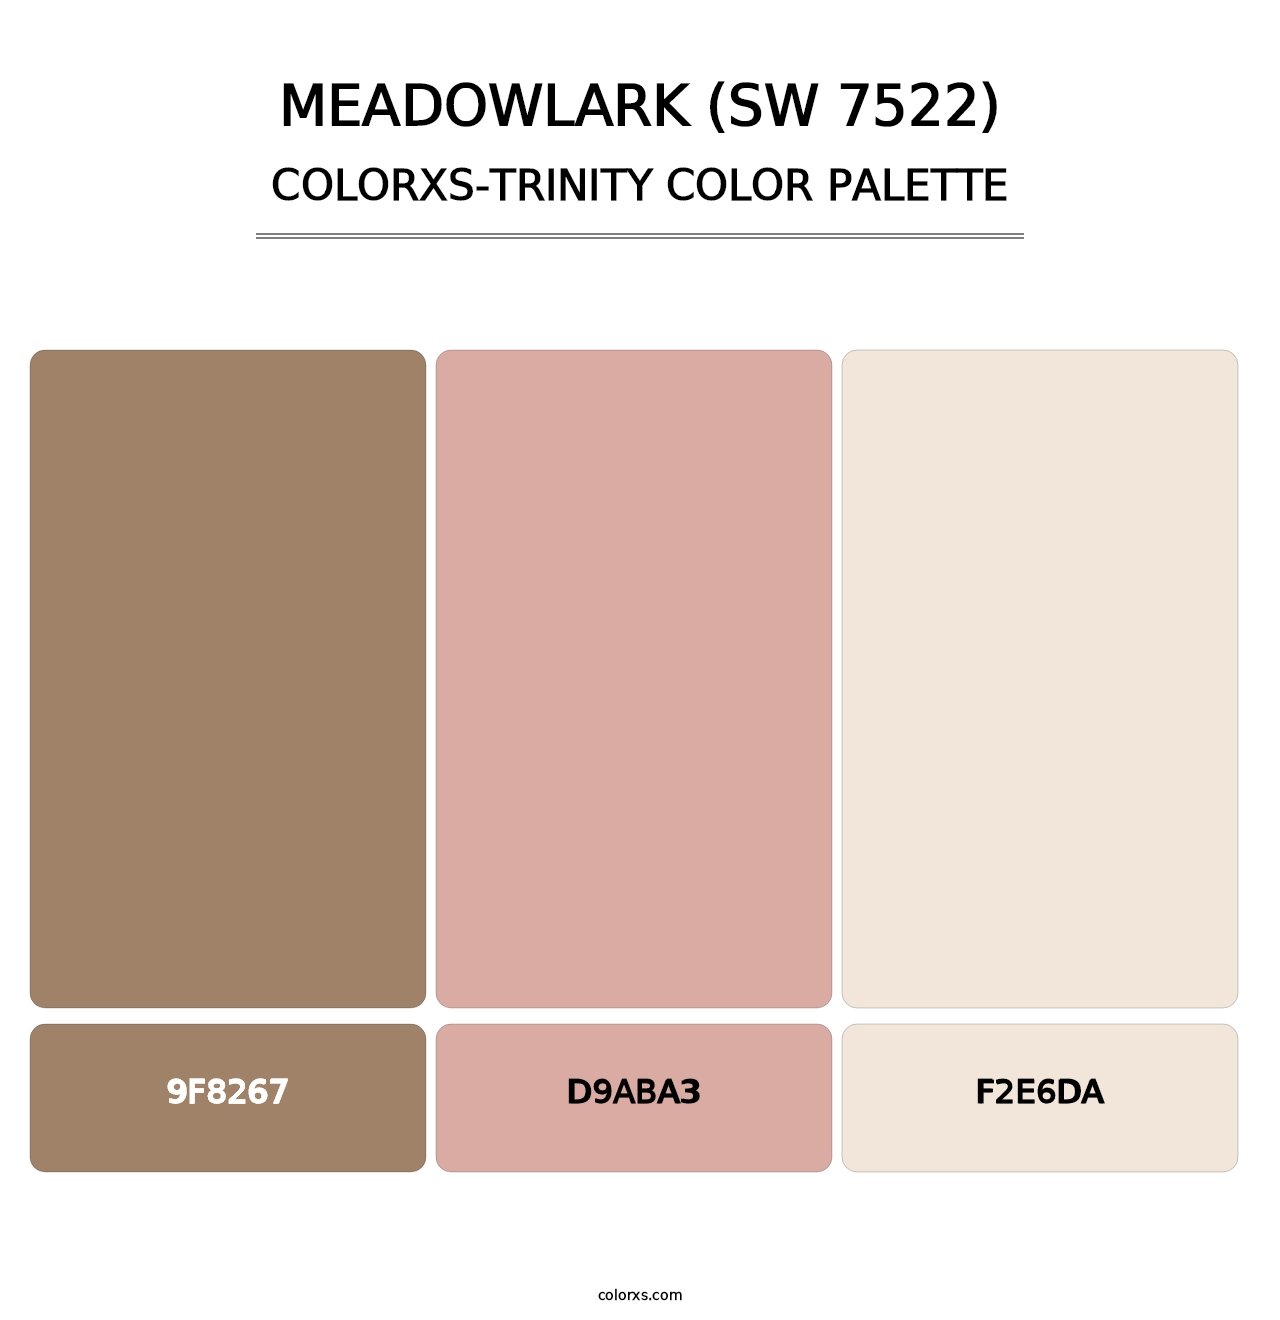 Meadowlark (SW 7522) - Colorxs Trinity Palette